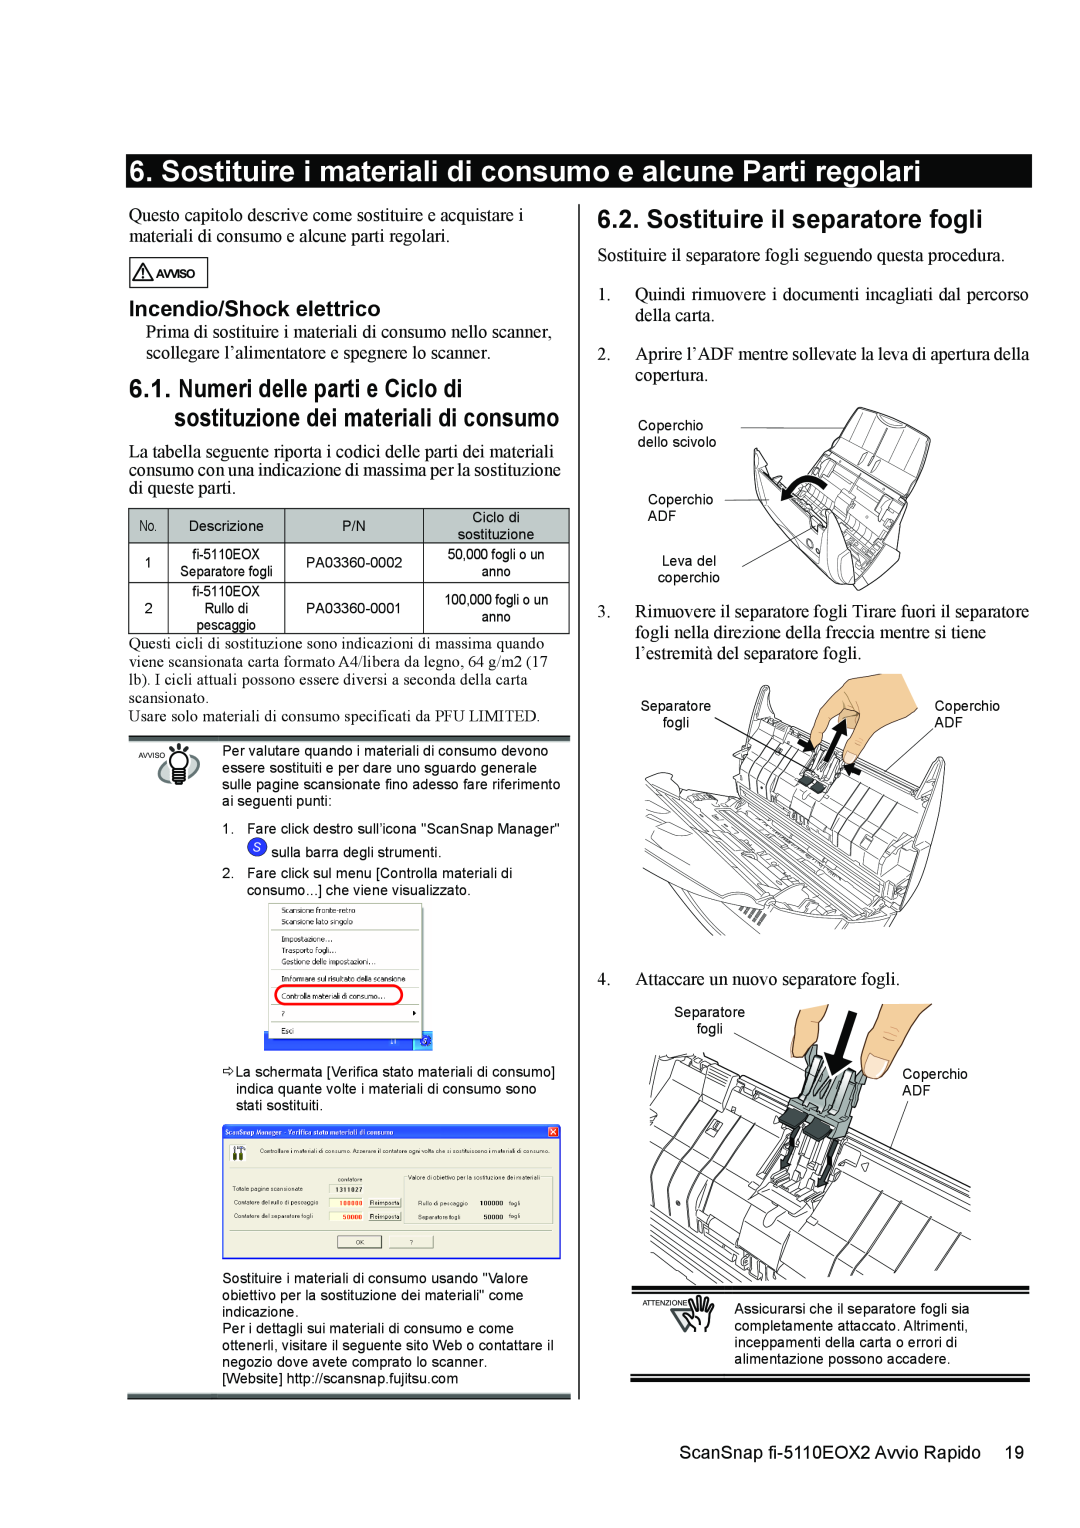 Fujitsu fi-5110EOX2 manual Sostituire i materiali di consumo e alcune Parti regolari, Sostituire il separatore fogli 